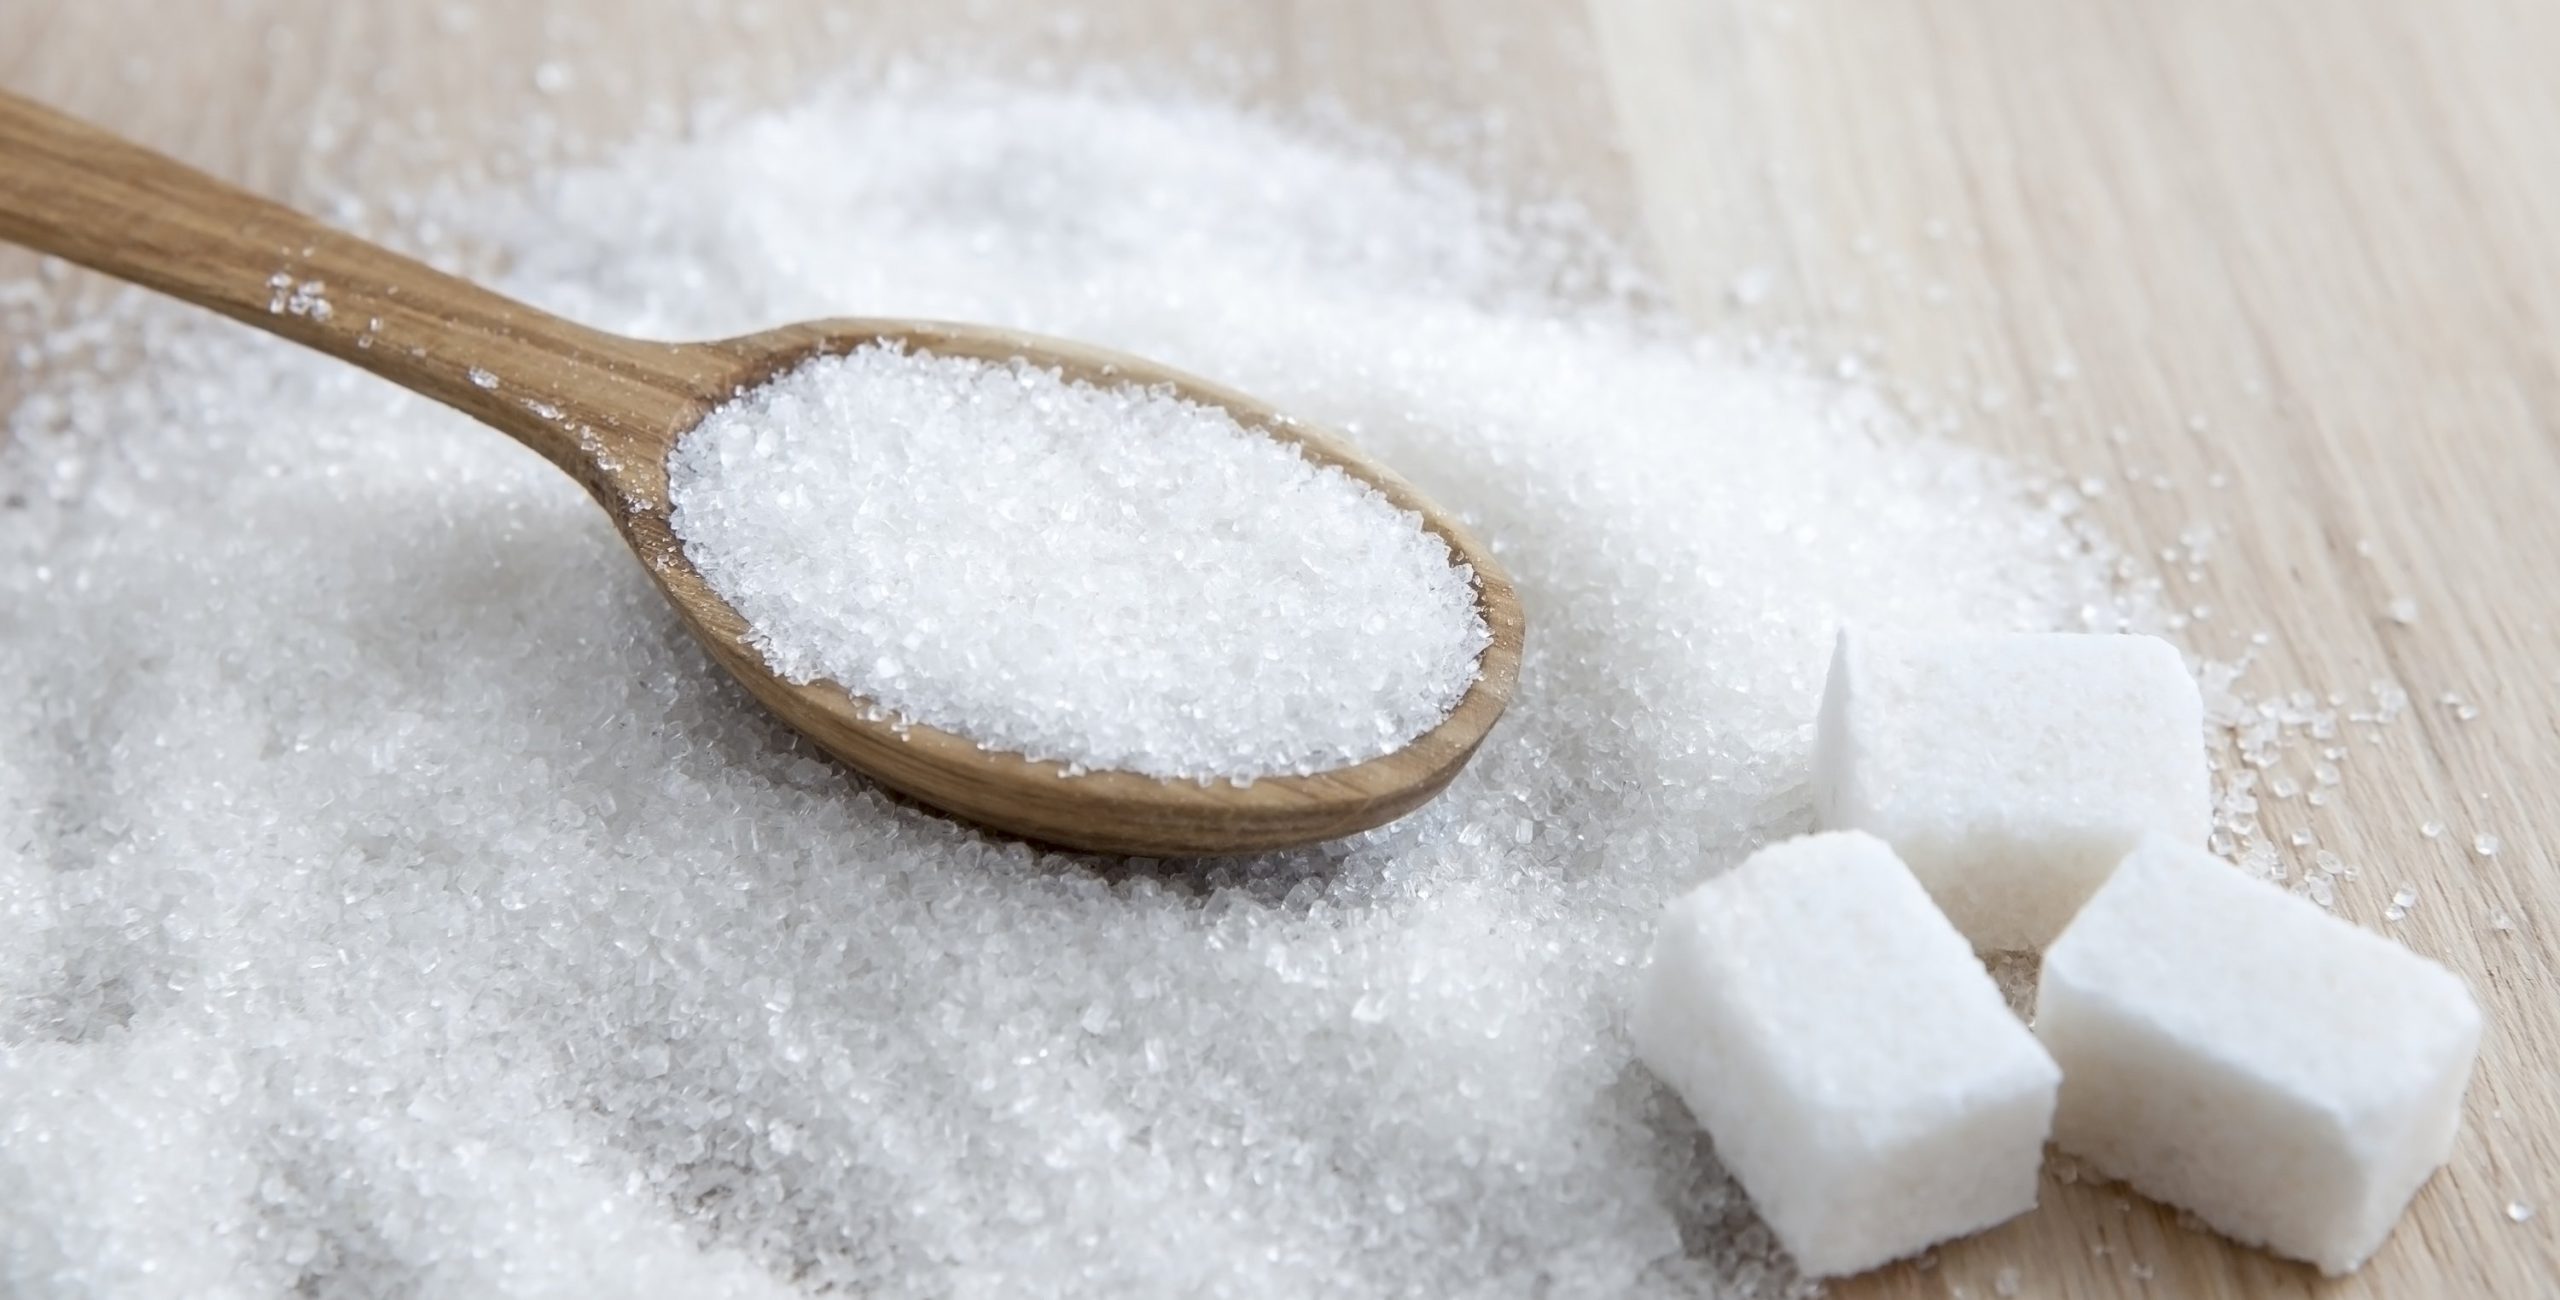 5 τρομακτικά πράγματα που παθαίνει ο οργανισμός σου όταν τρως πολλή ζάχαρη